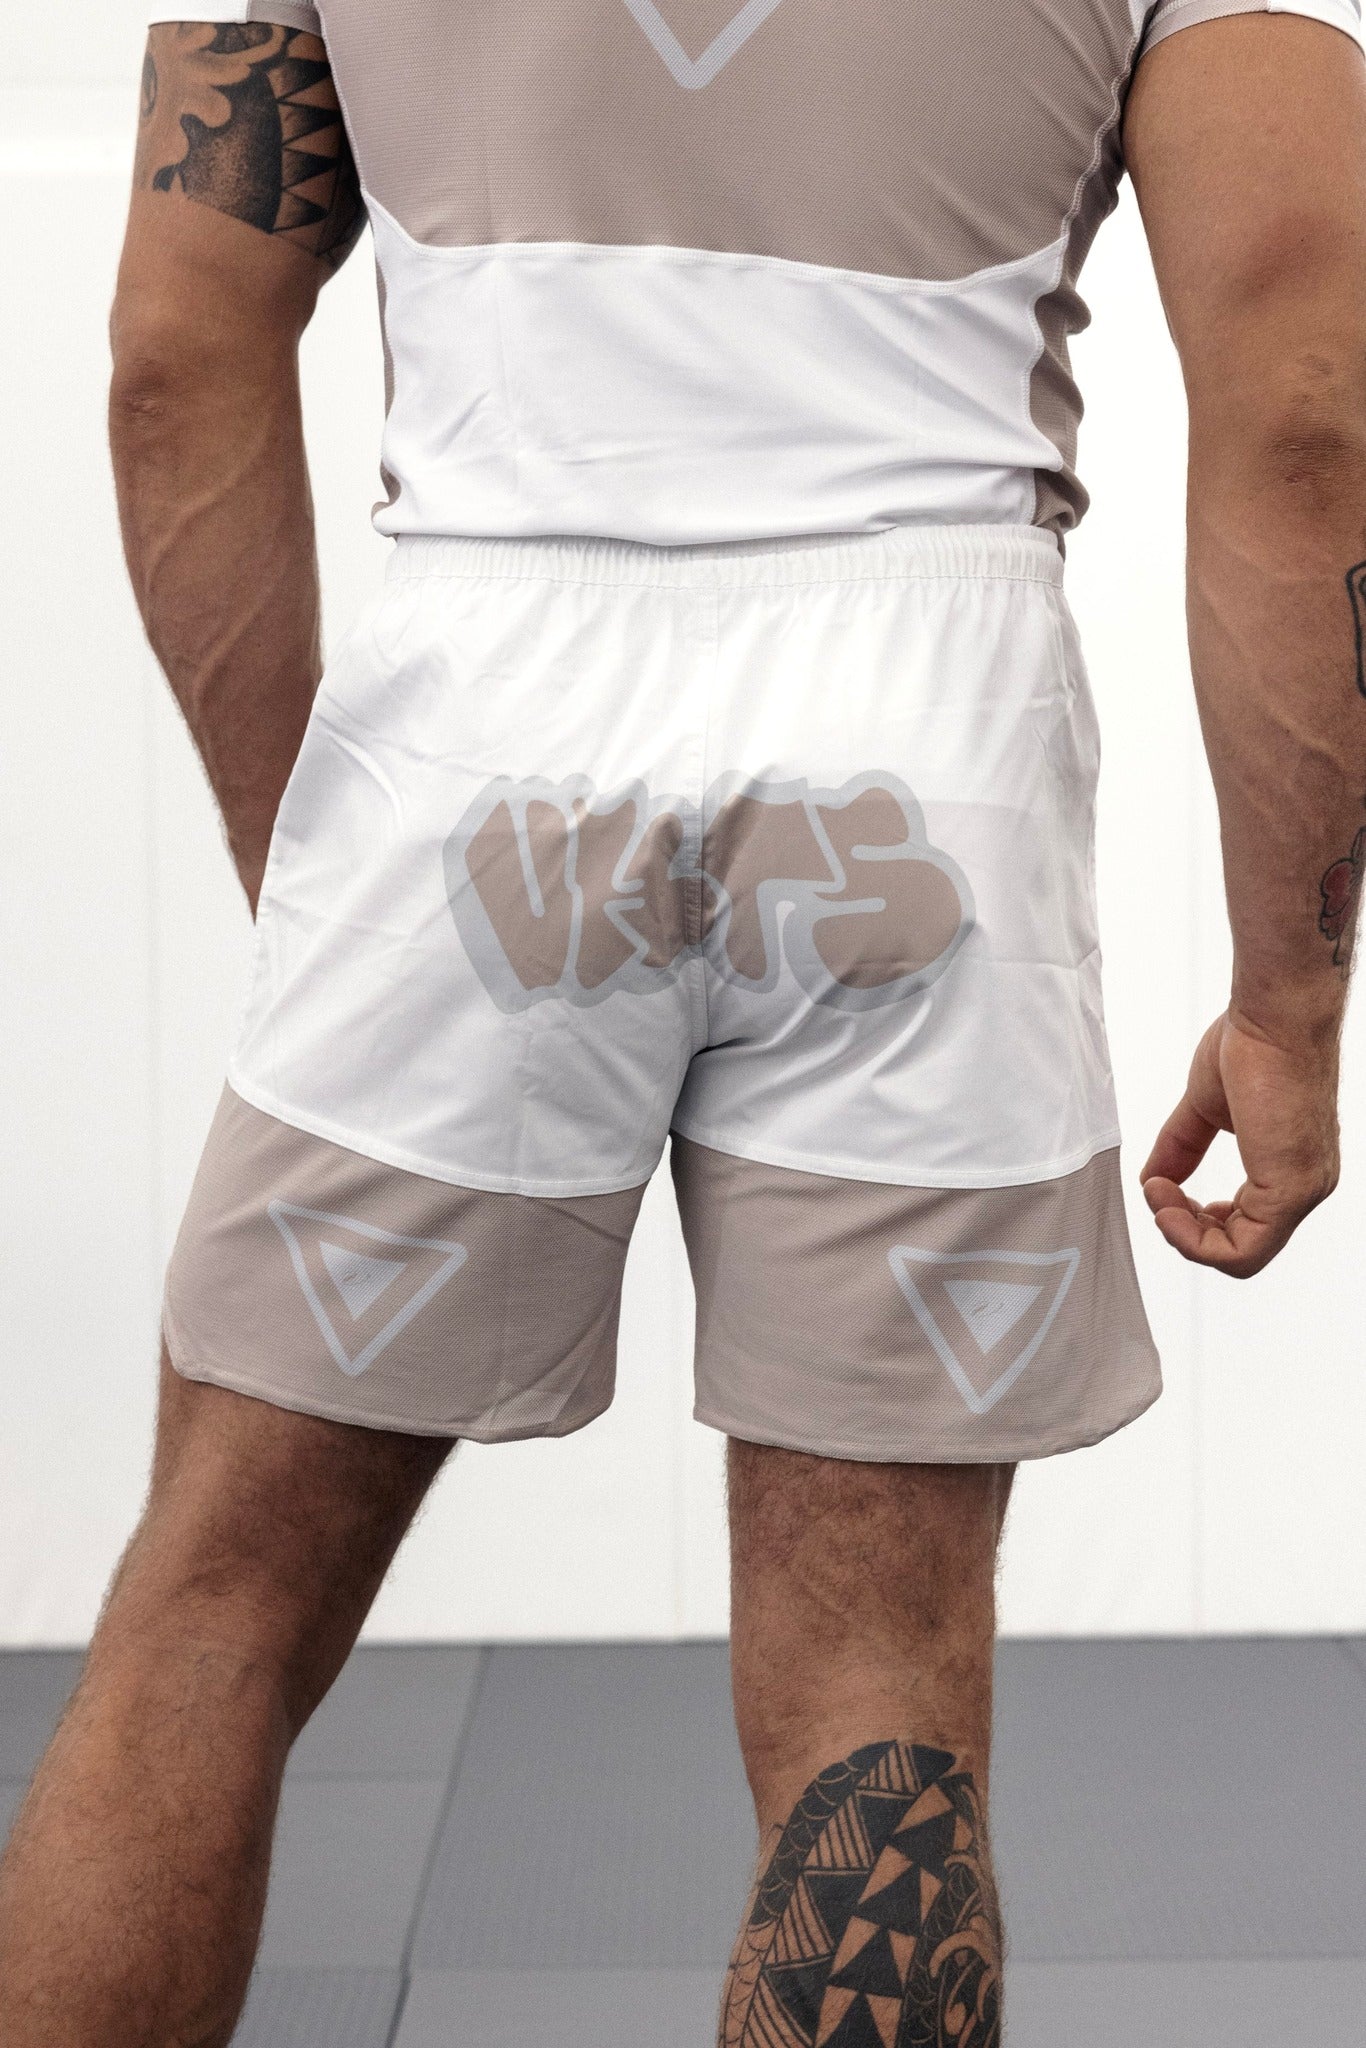 VHTS 10th Anniversary Combat shorts "White"